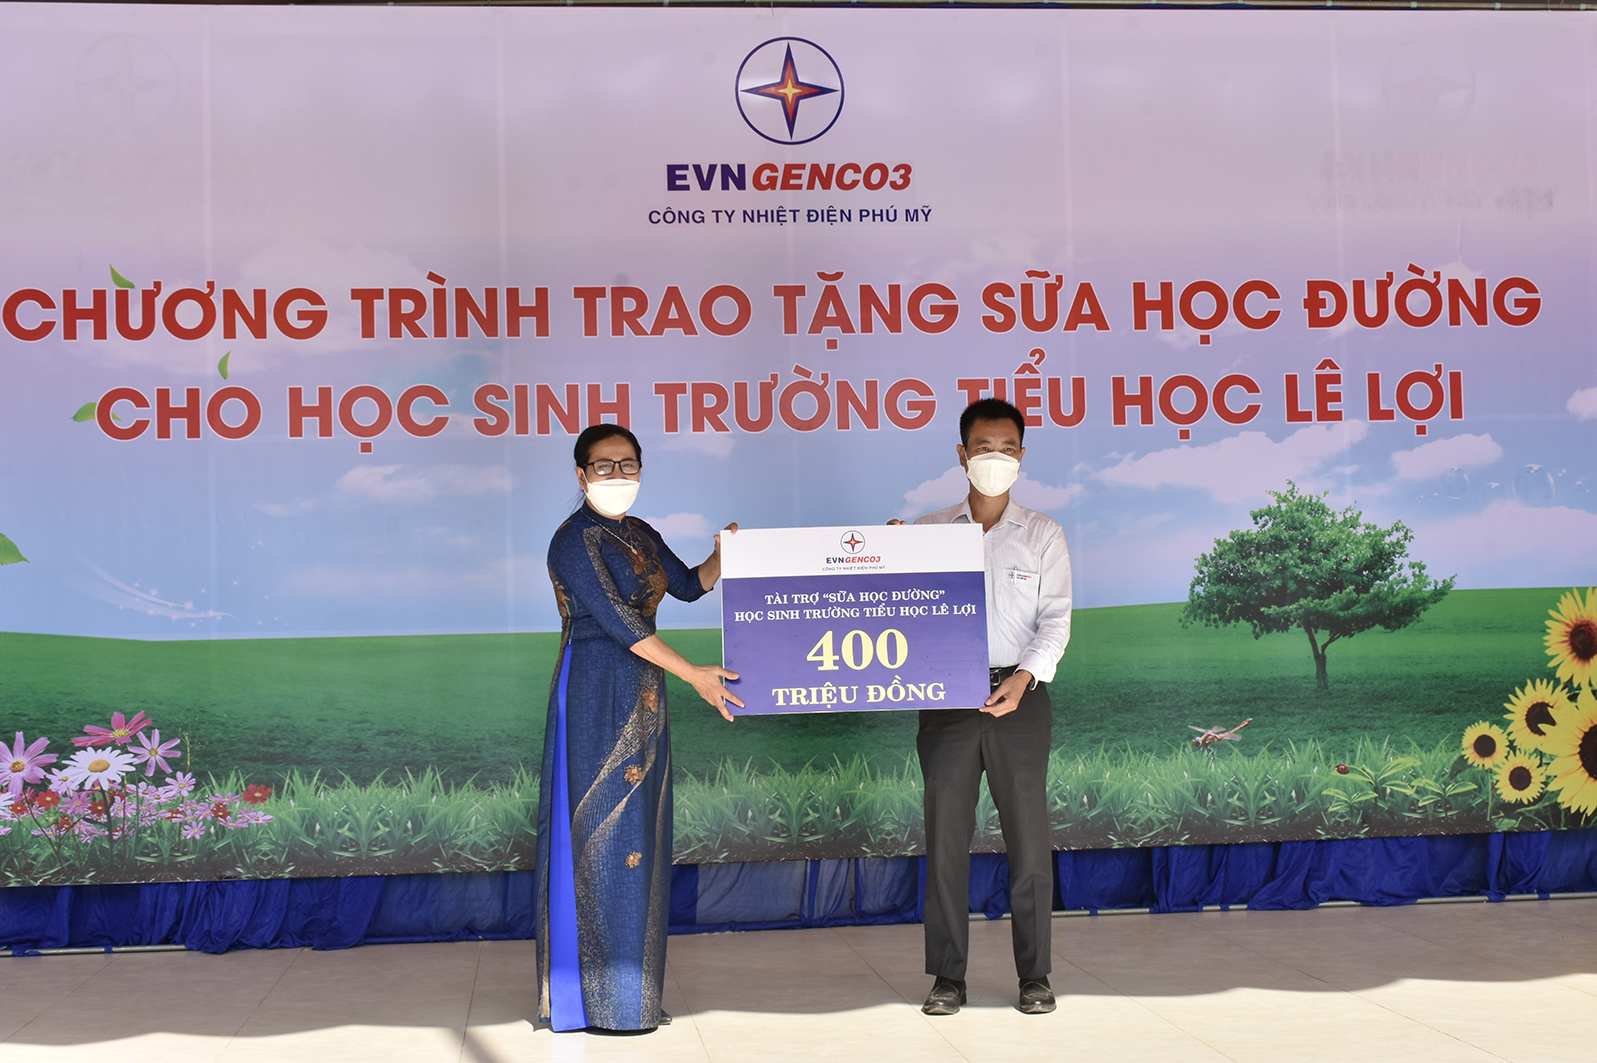 Ông Nguyễn Xuân Hiệp, Phó Bí thư Đảng uỷ, Phó Giám đốc, Chủ tịch Công đoàn Công ty Nhiệt điện Phú Mỹ trao bảng tượng trưng số tiền 400 triệu đồng tài trợ 